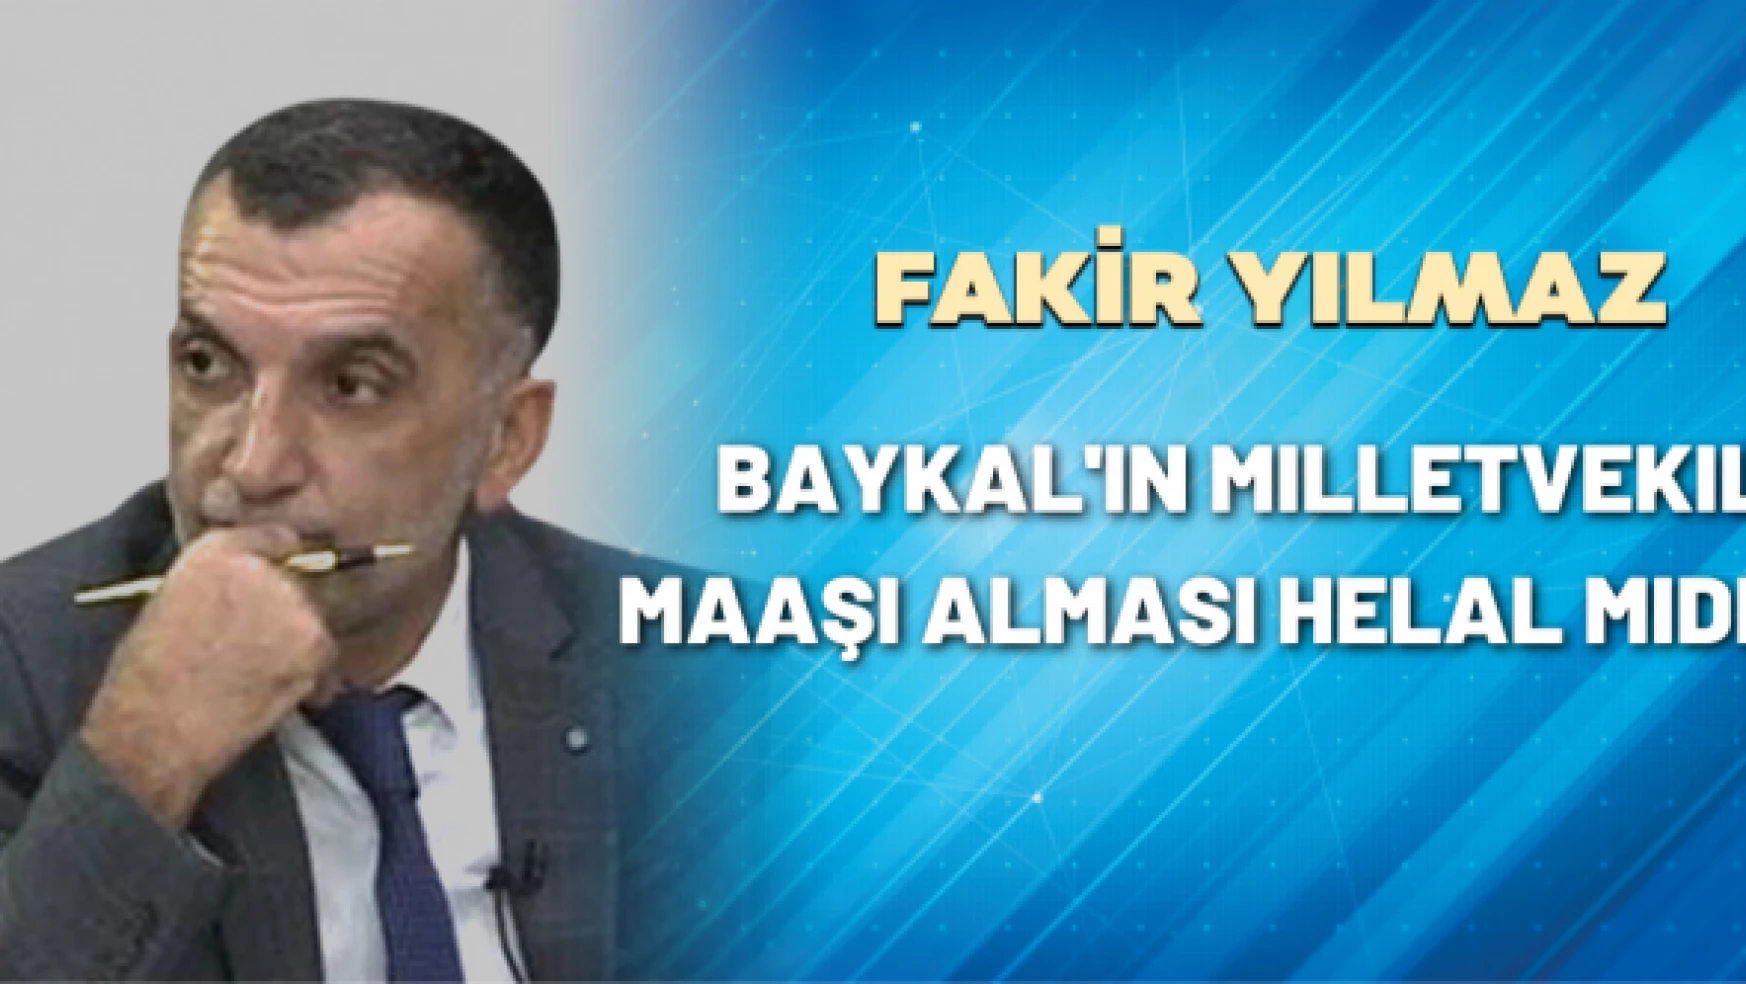 Gazeteci Fakir Yılmaz yazdı: Baykal'ın milletvekili maaşı alması helal midir?